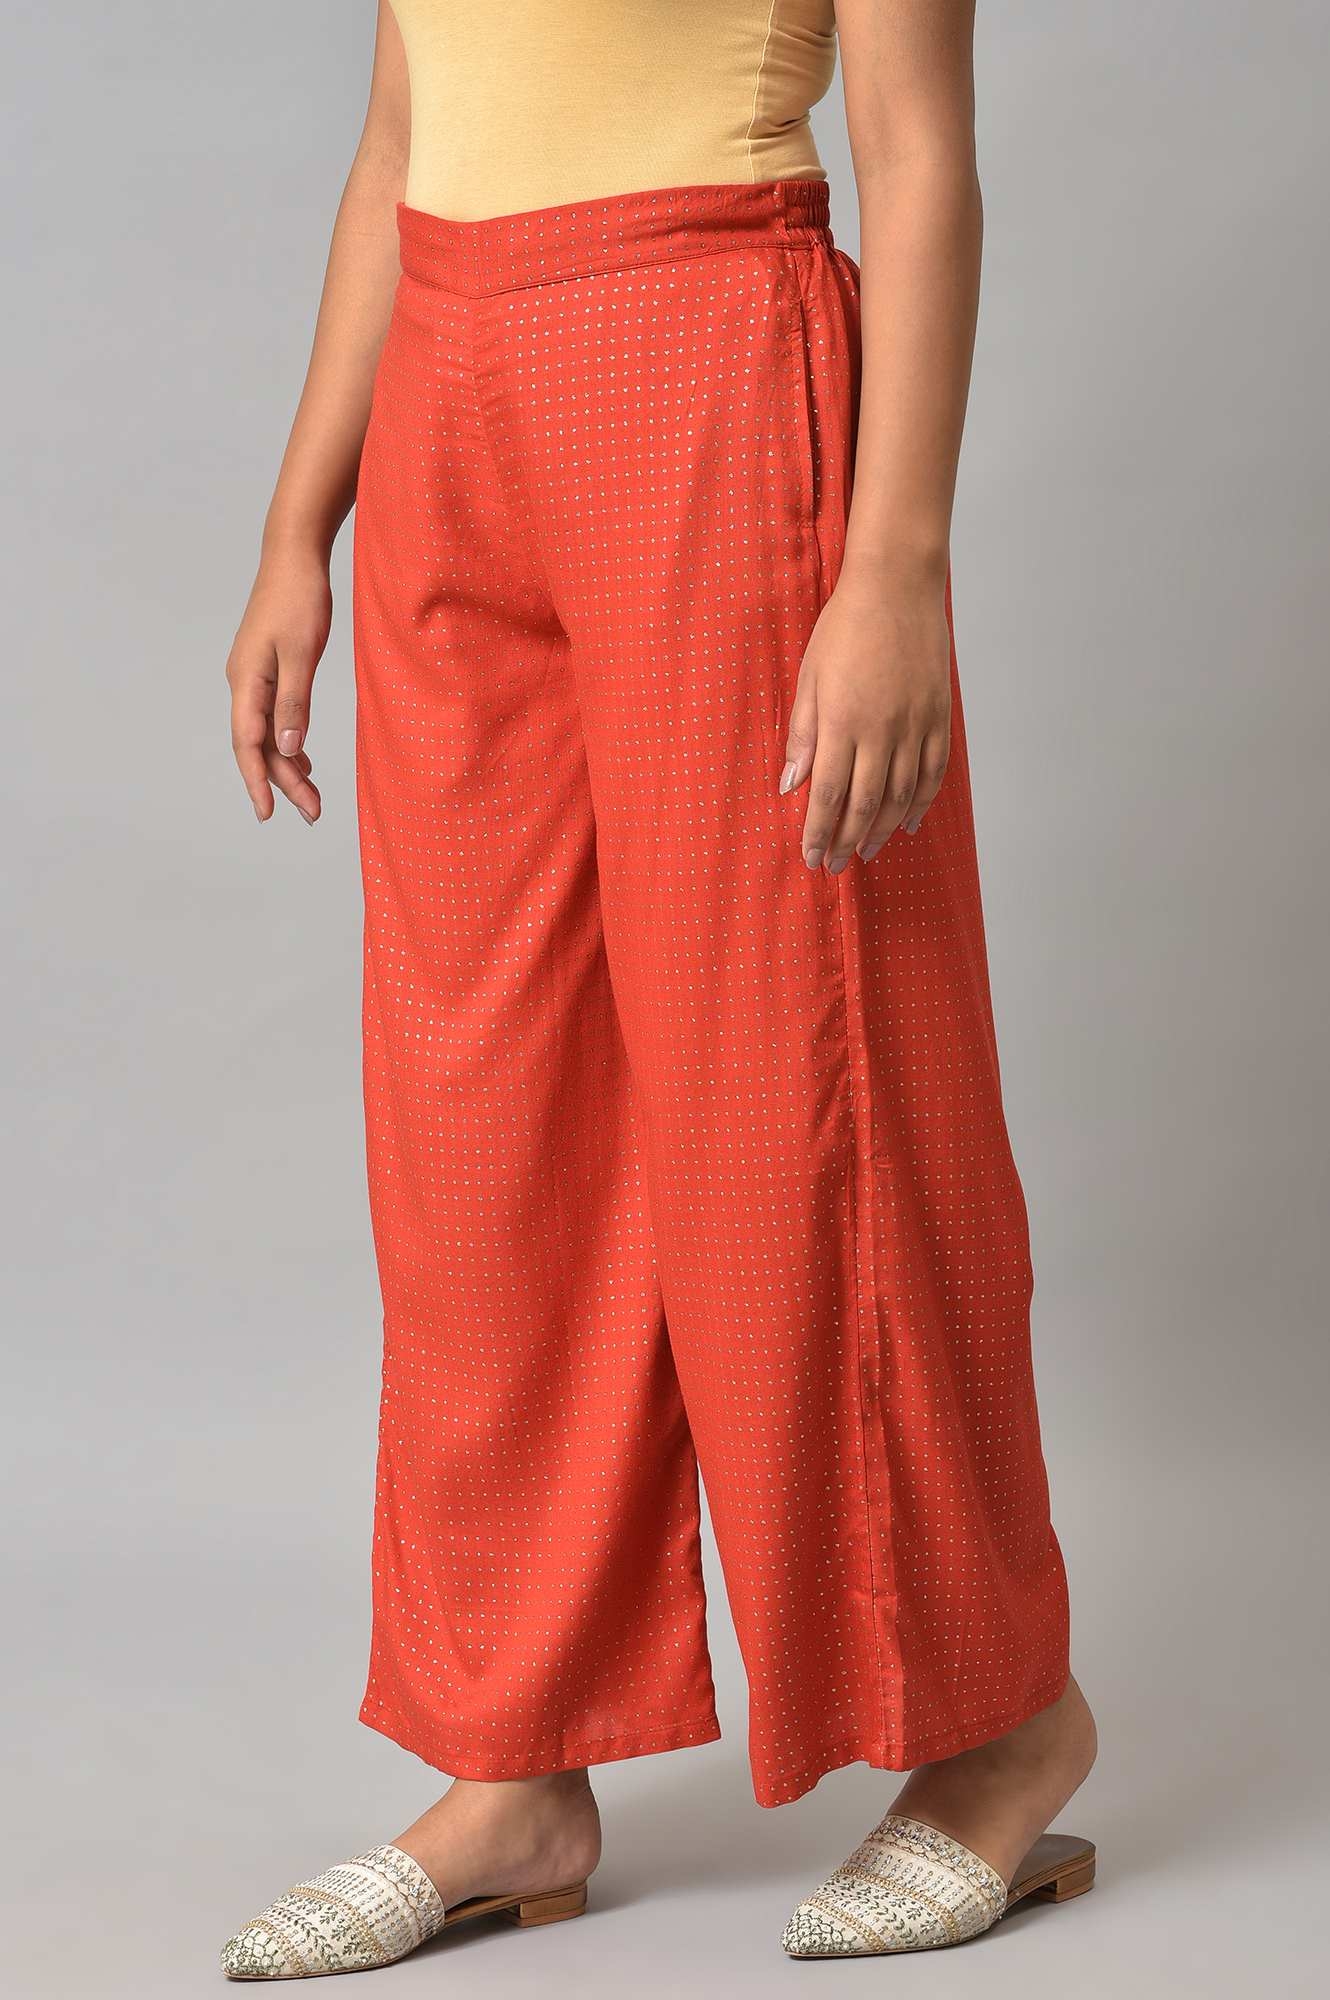 Amazon.com: Women's Casual Solid Color Wide Leg Pants Elastic High Waist  Long Pants Casual Cotton Linen Long Pants Lady (Orange, M) : Sports &  Outdoors